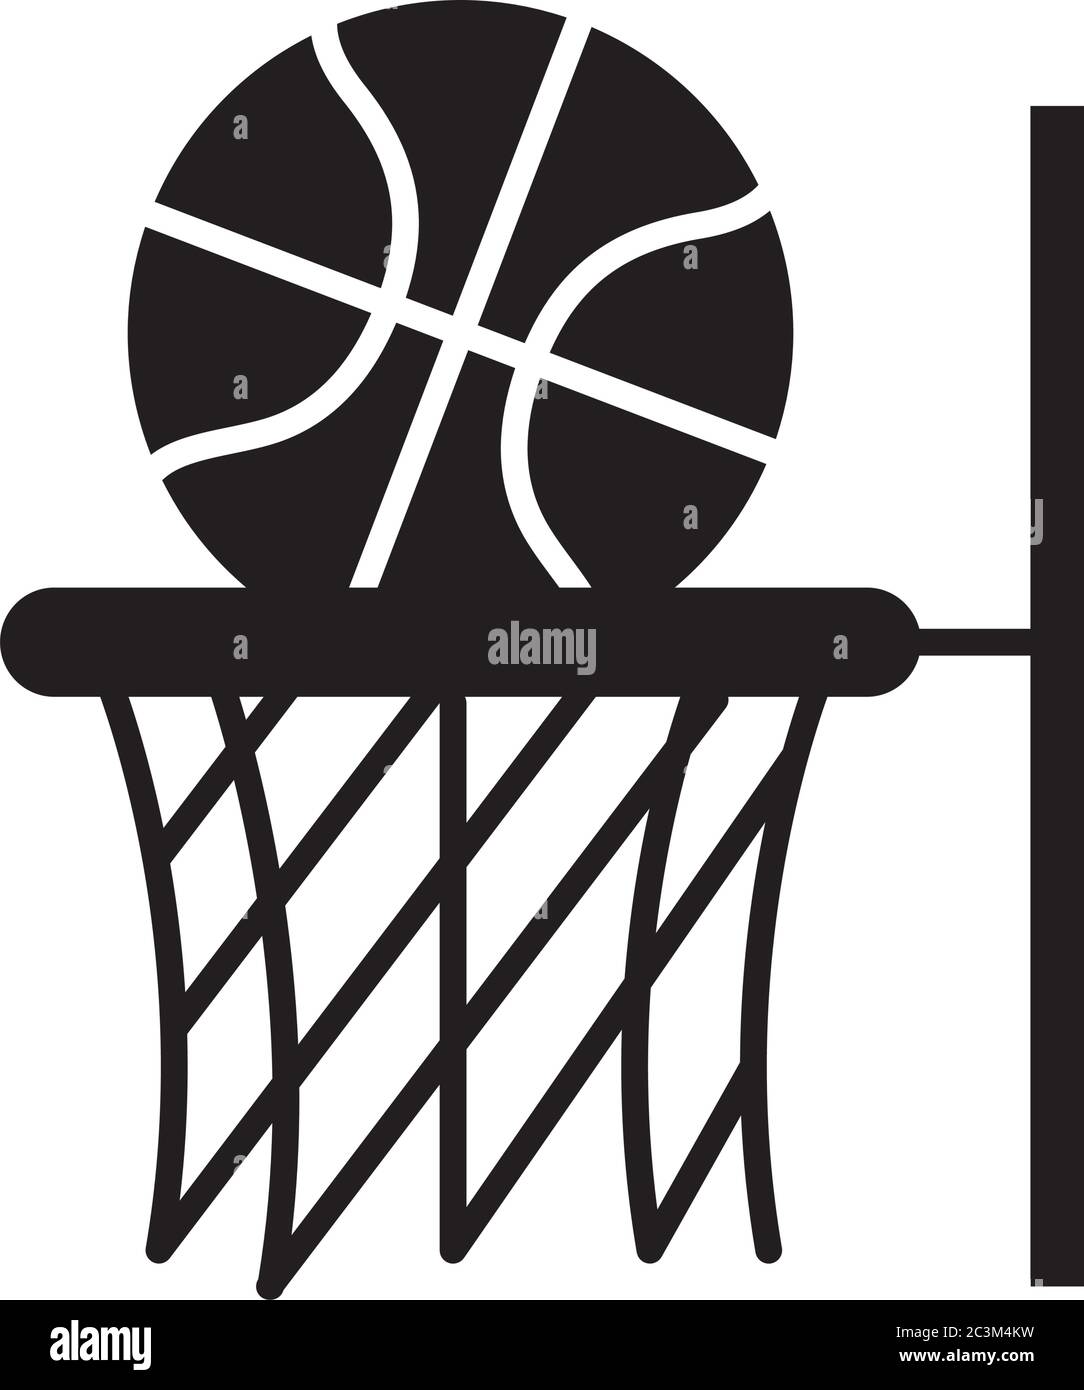 jeu de basket-ball, ballon dans le sport de loisirs de basket-ball silhouette style icône illustration vectorielle Illustration de Vecteur